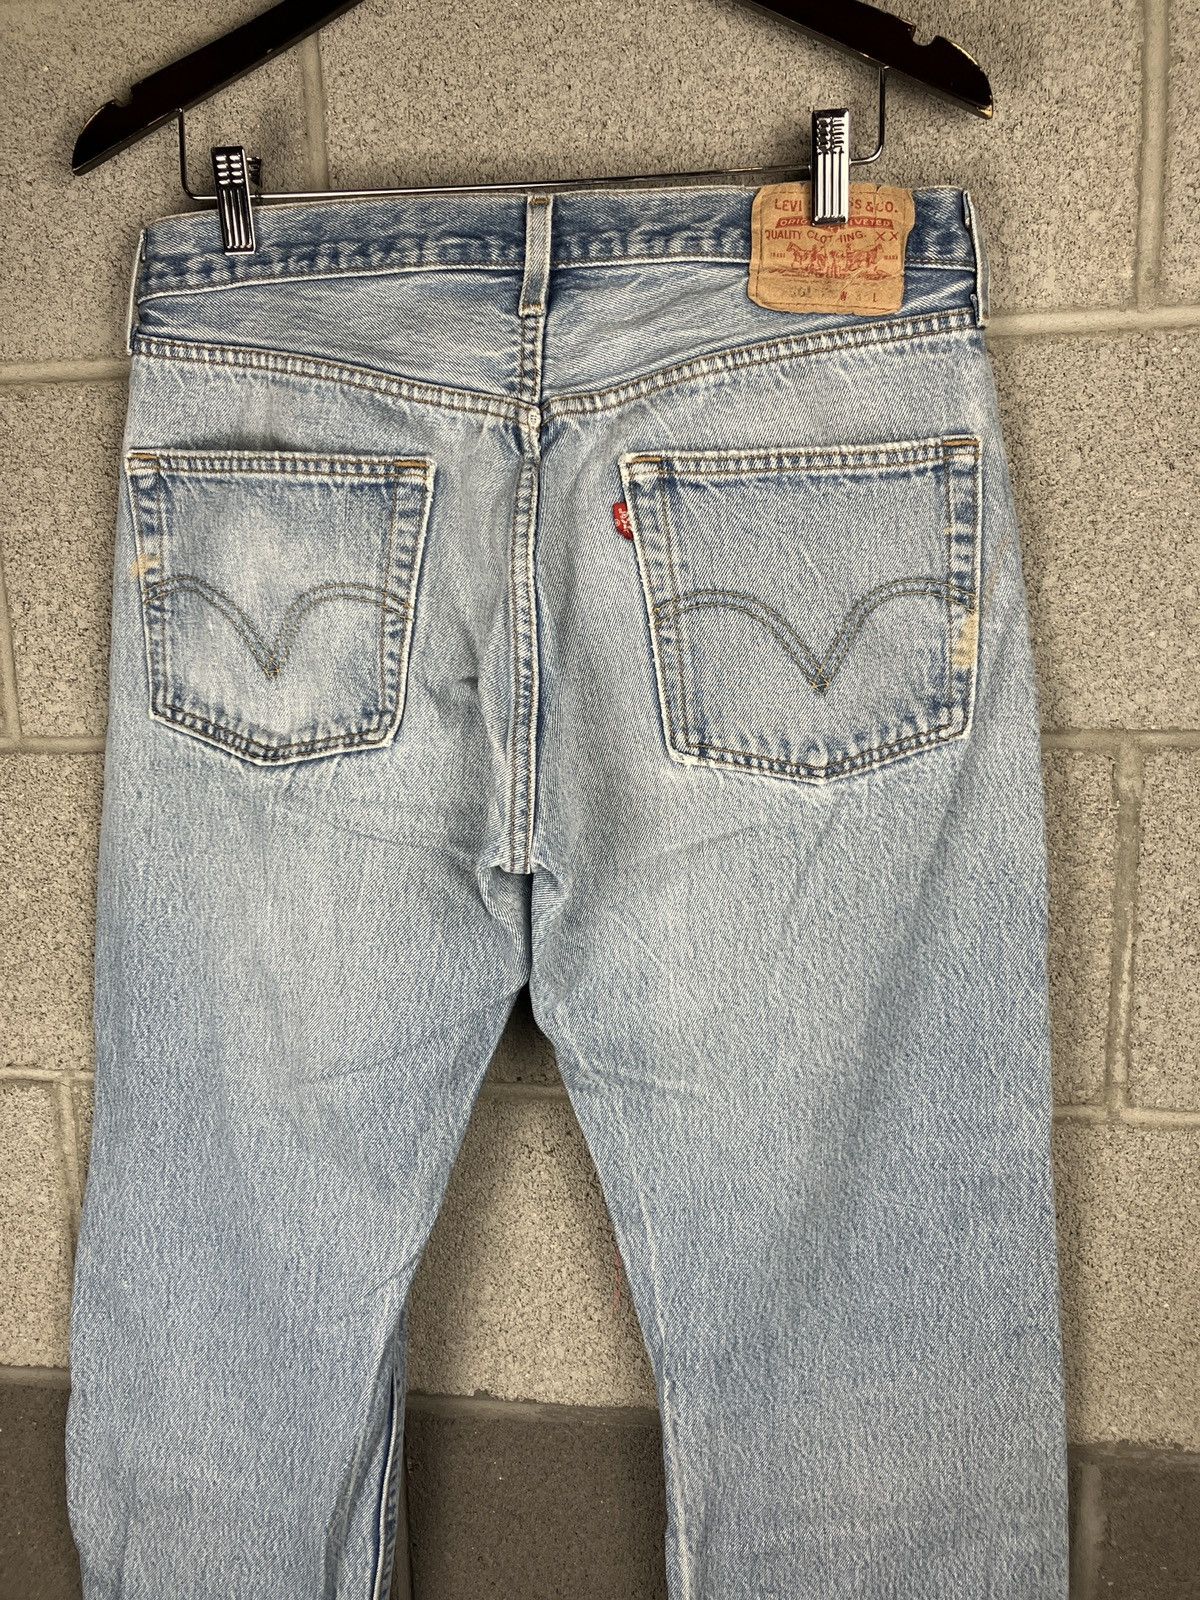 Vintage Vintage Levi’s 501 Distressed Painted Jeans 33 x 29 Size US 33 - 9 Thumbnail